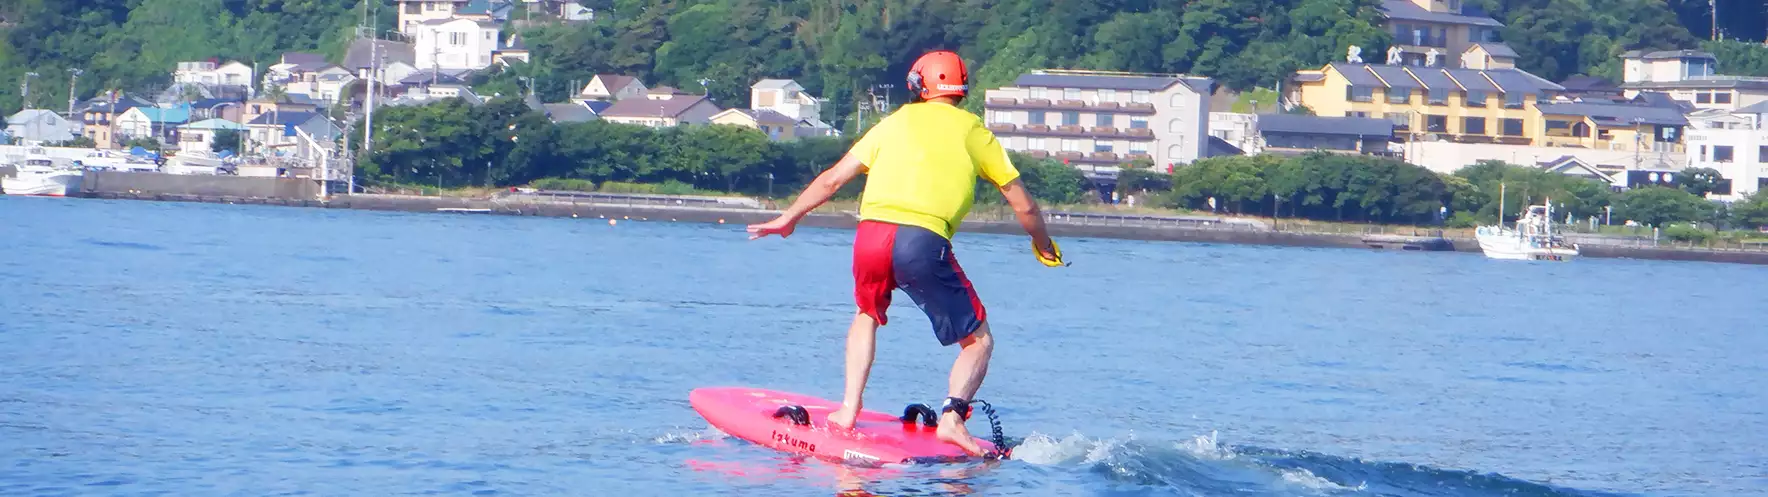 湘南の海でマリンスポーツを楽しむ。江ノ島フォイルサーフィン体験